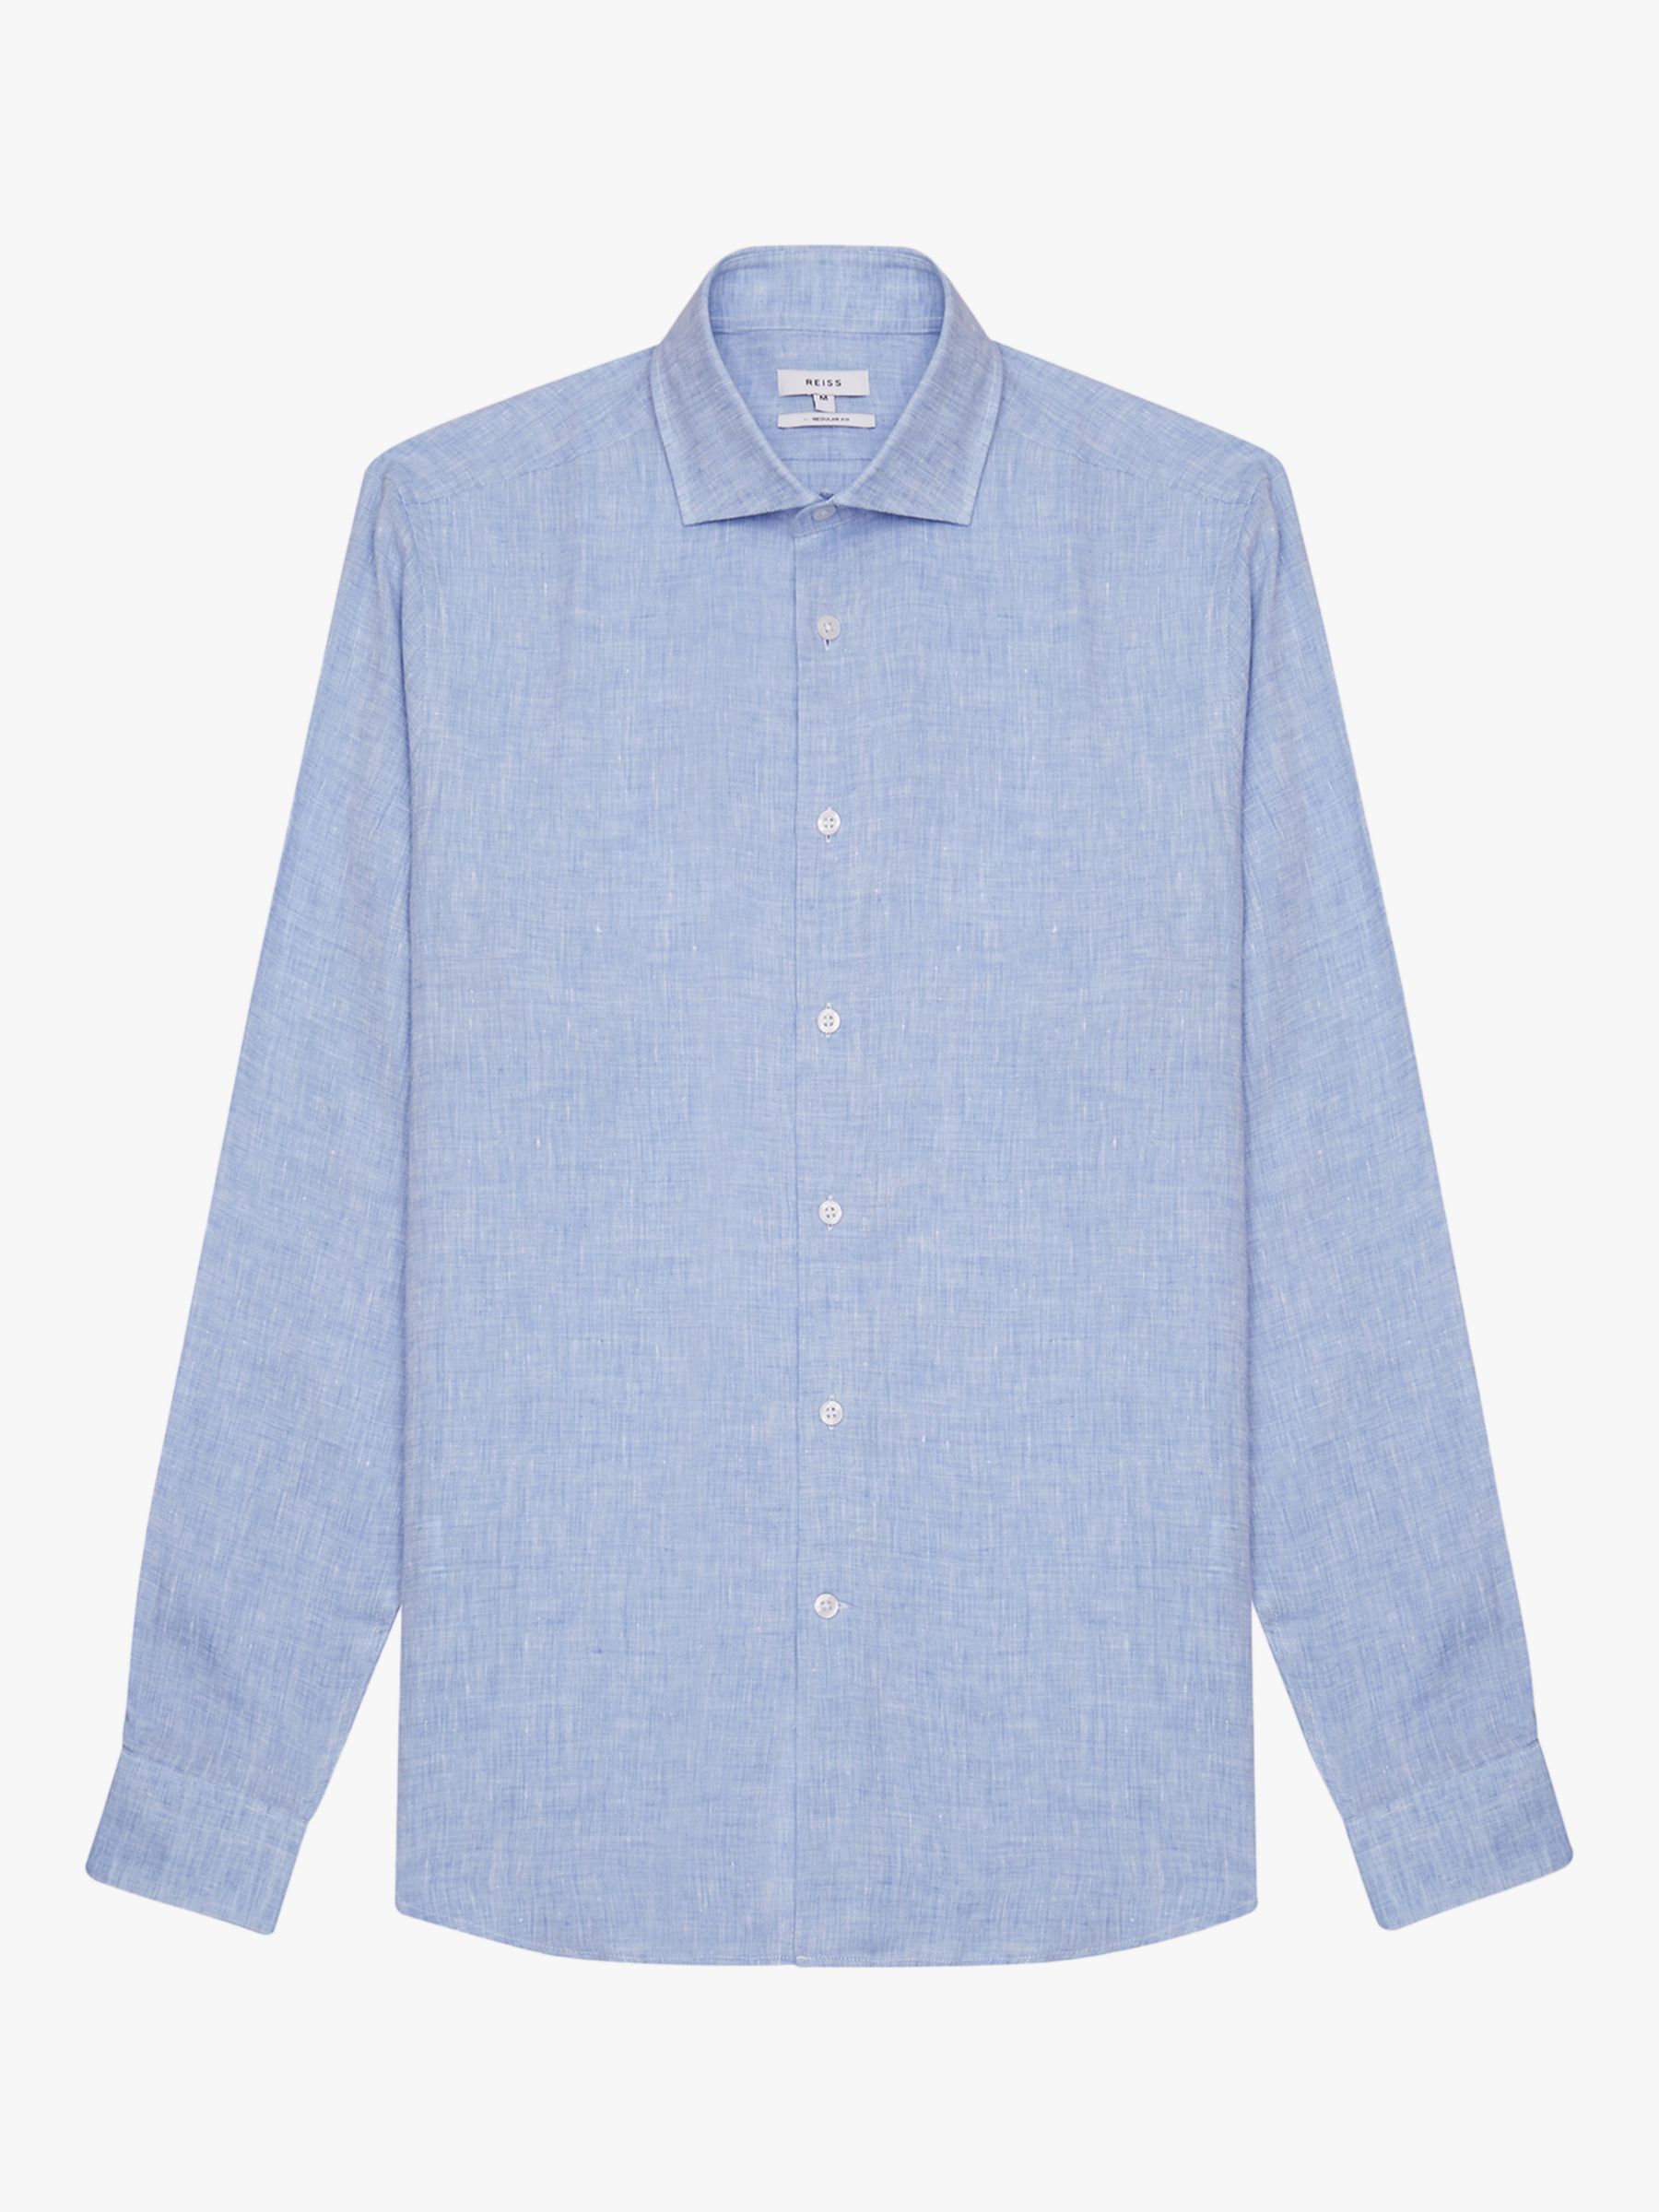 Reiss Ruban Linen Regular Fit Shirt, Soft Blue at John Lewis & Partners